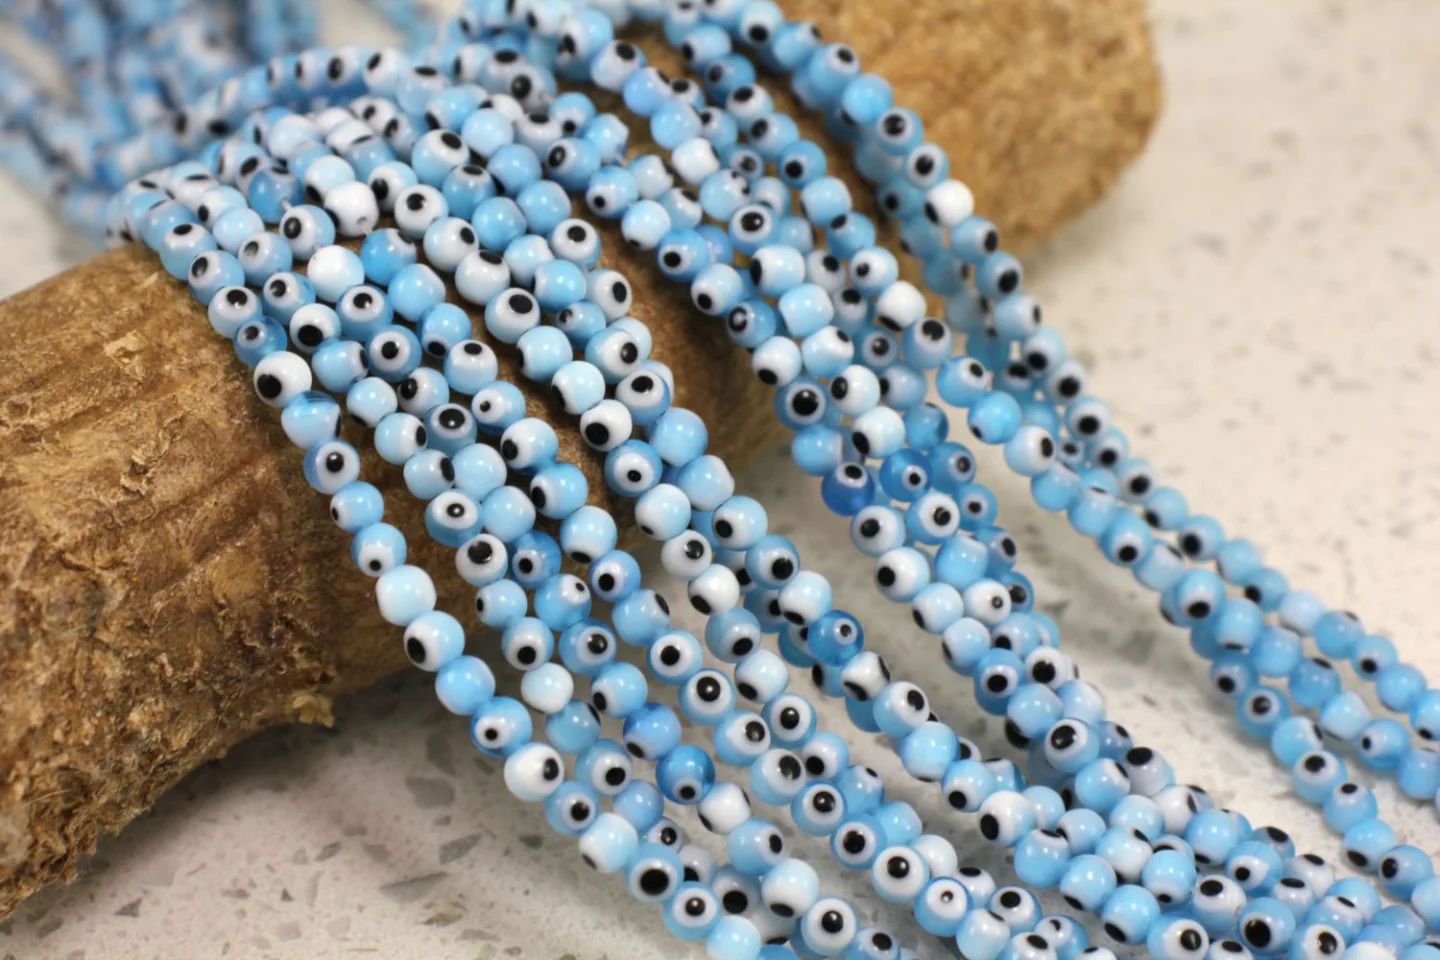 4mm-blue-glass-evil-eye-beads.